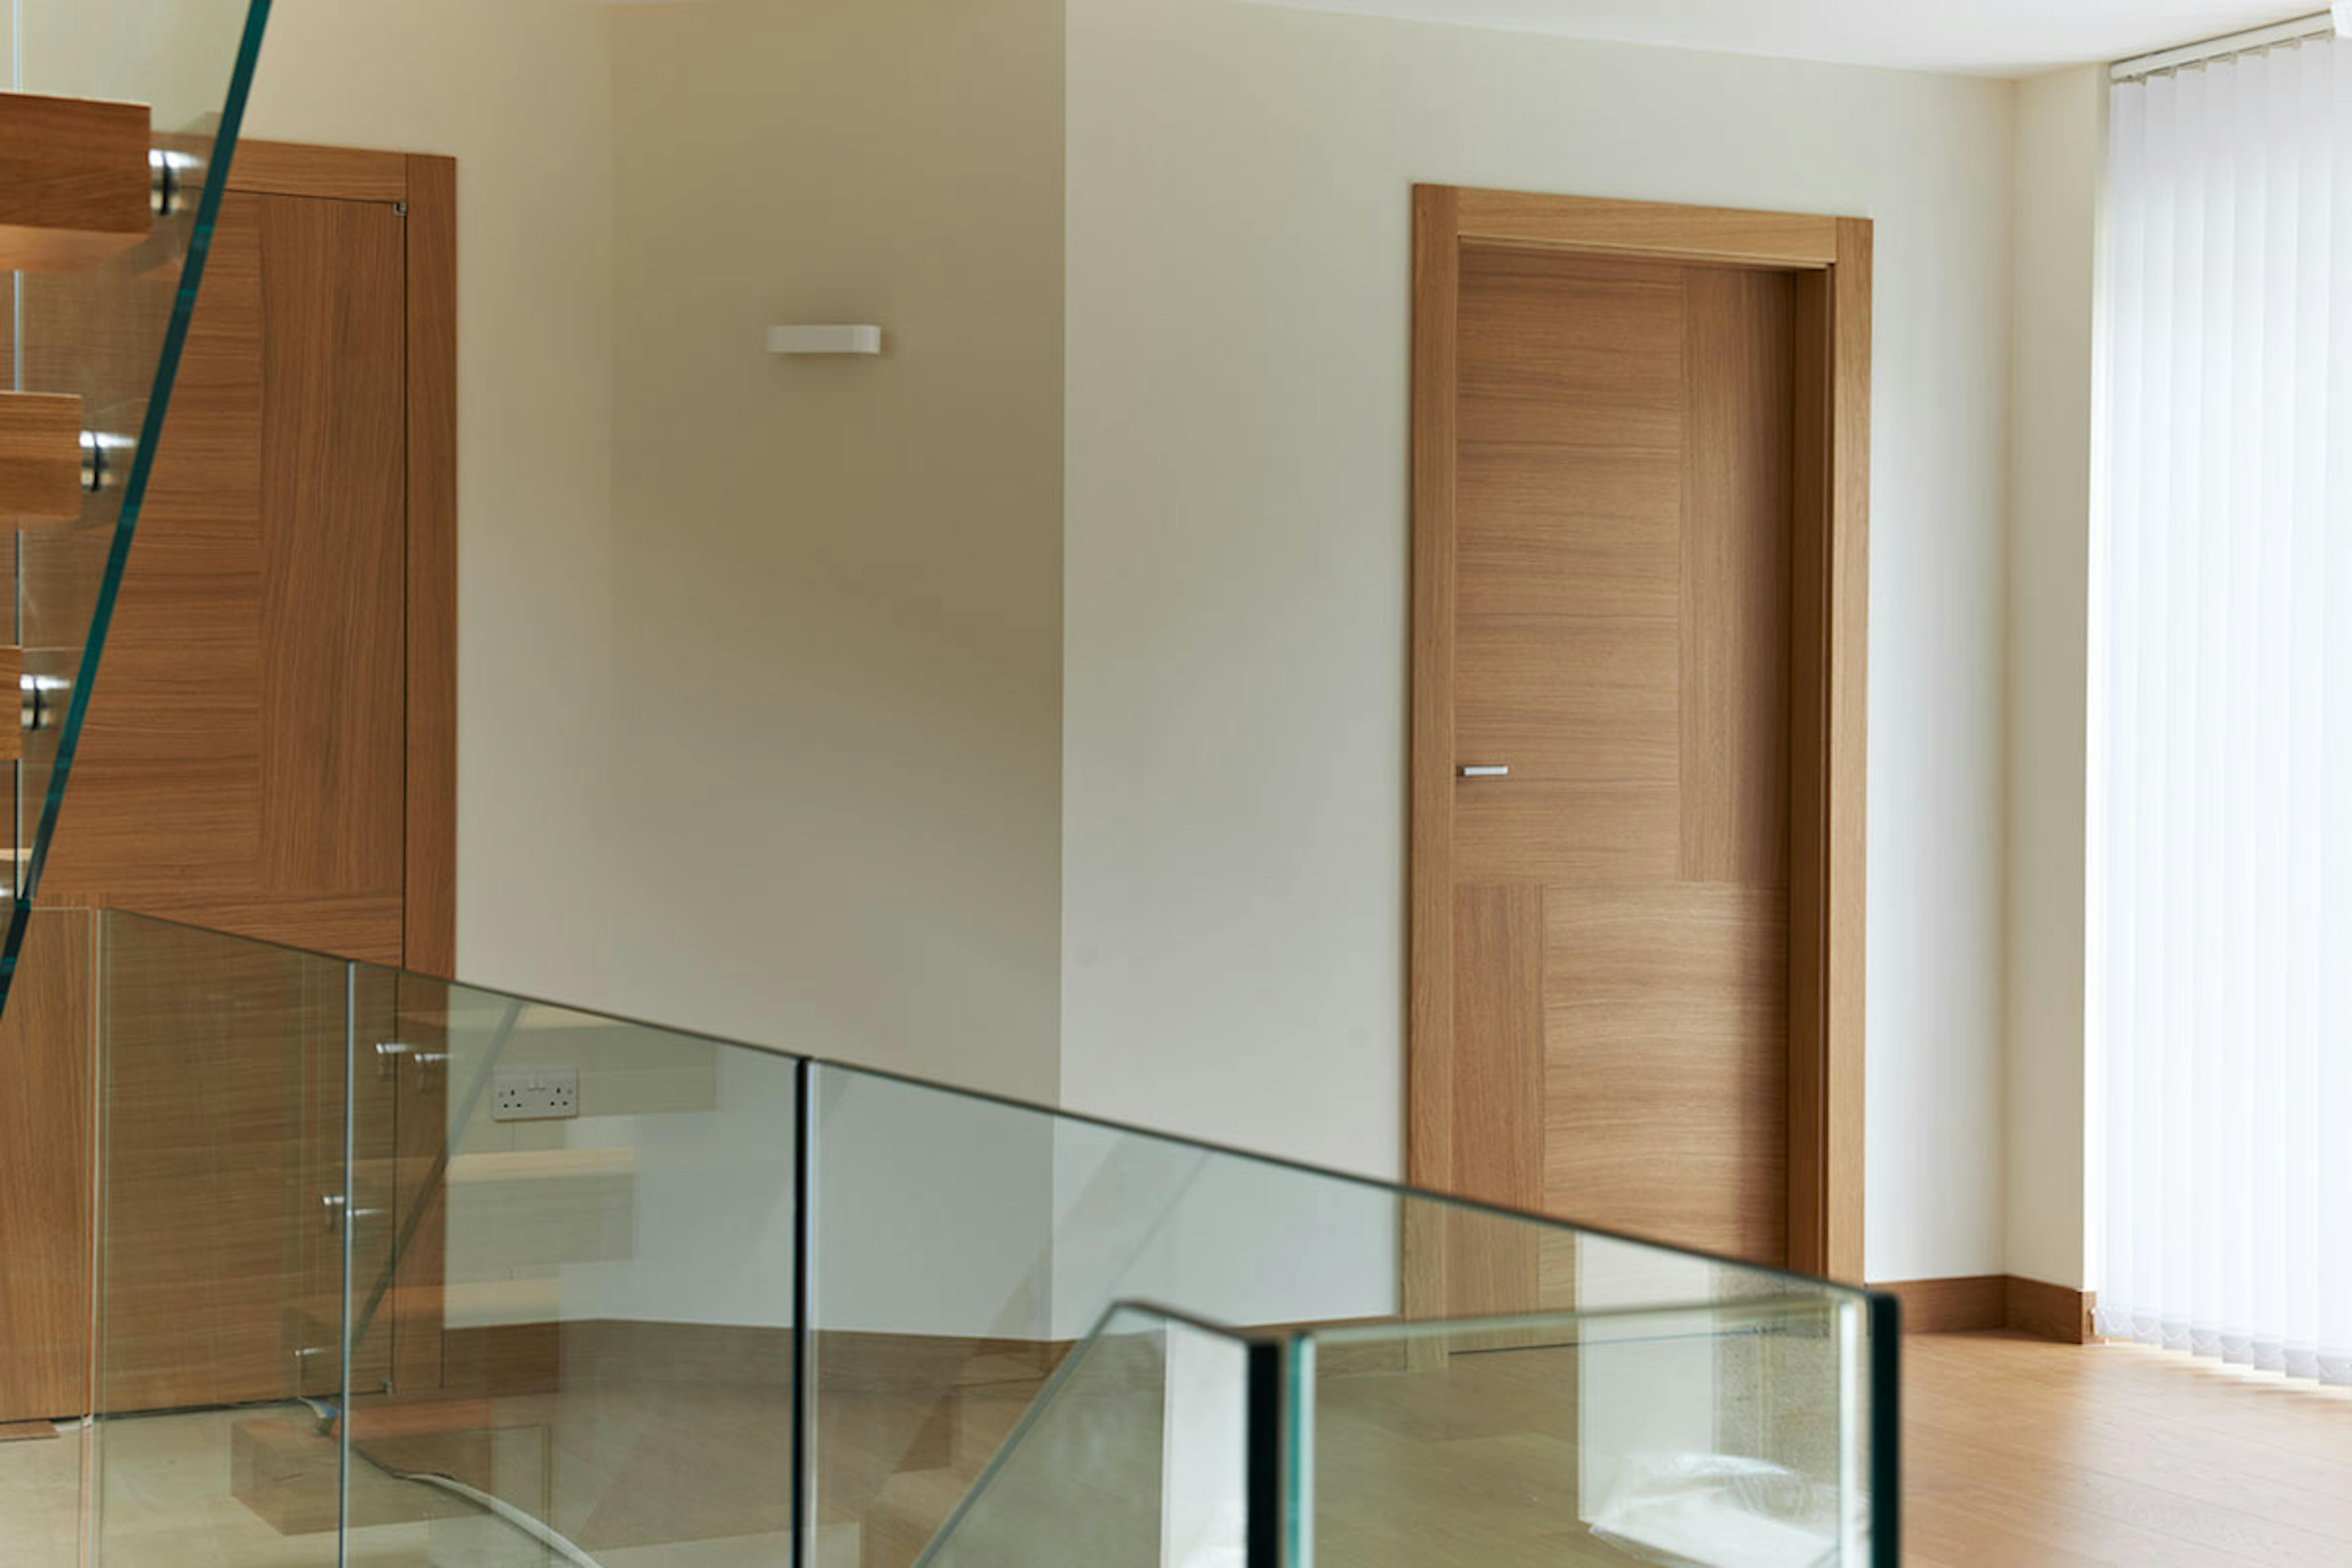 Self-build home with Deuren internal door sets - Vario 4 in Natural Oak